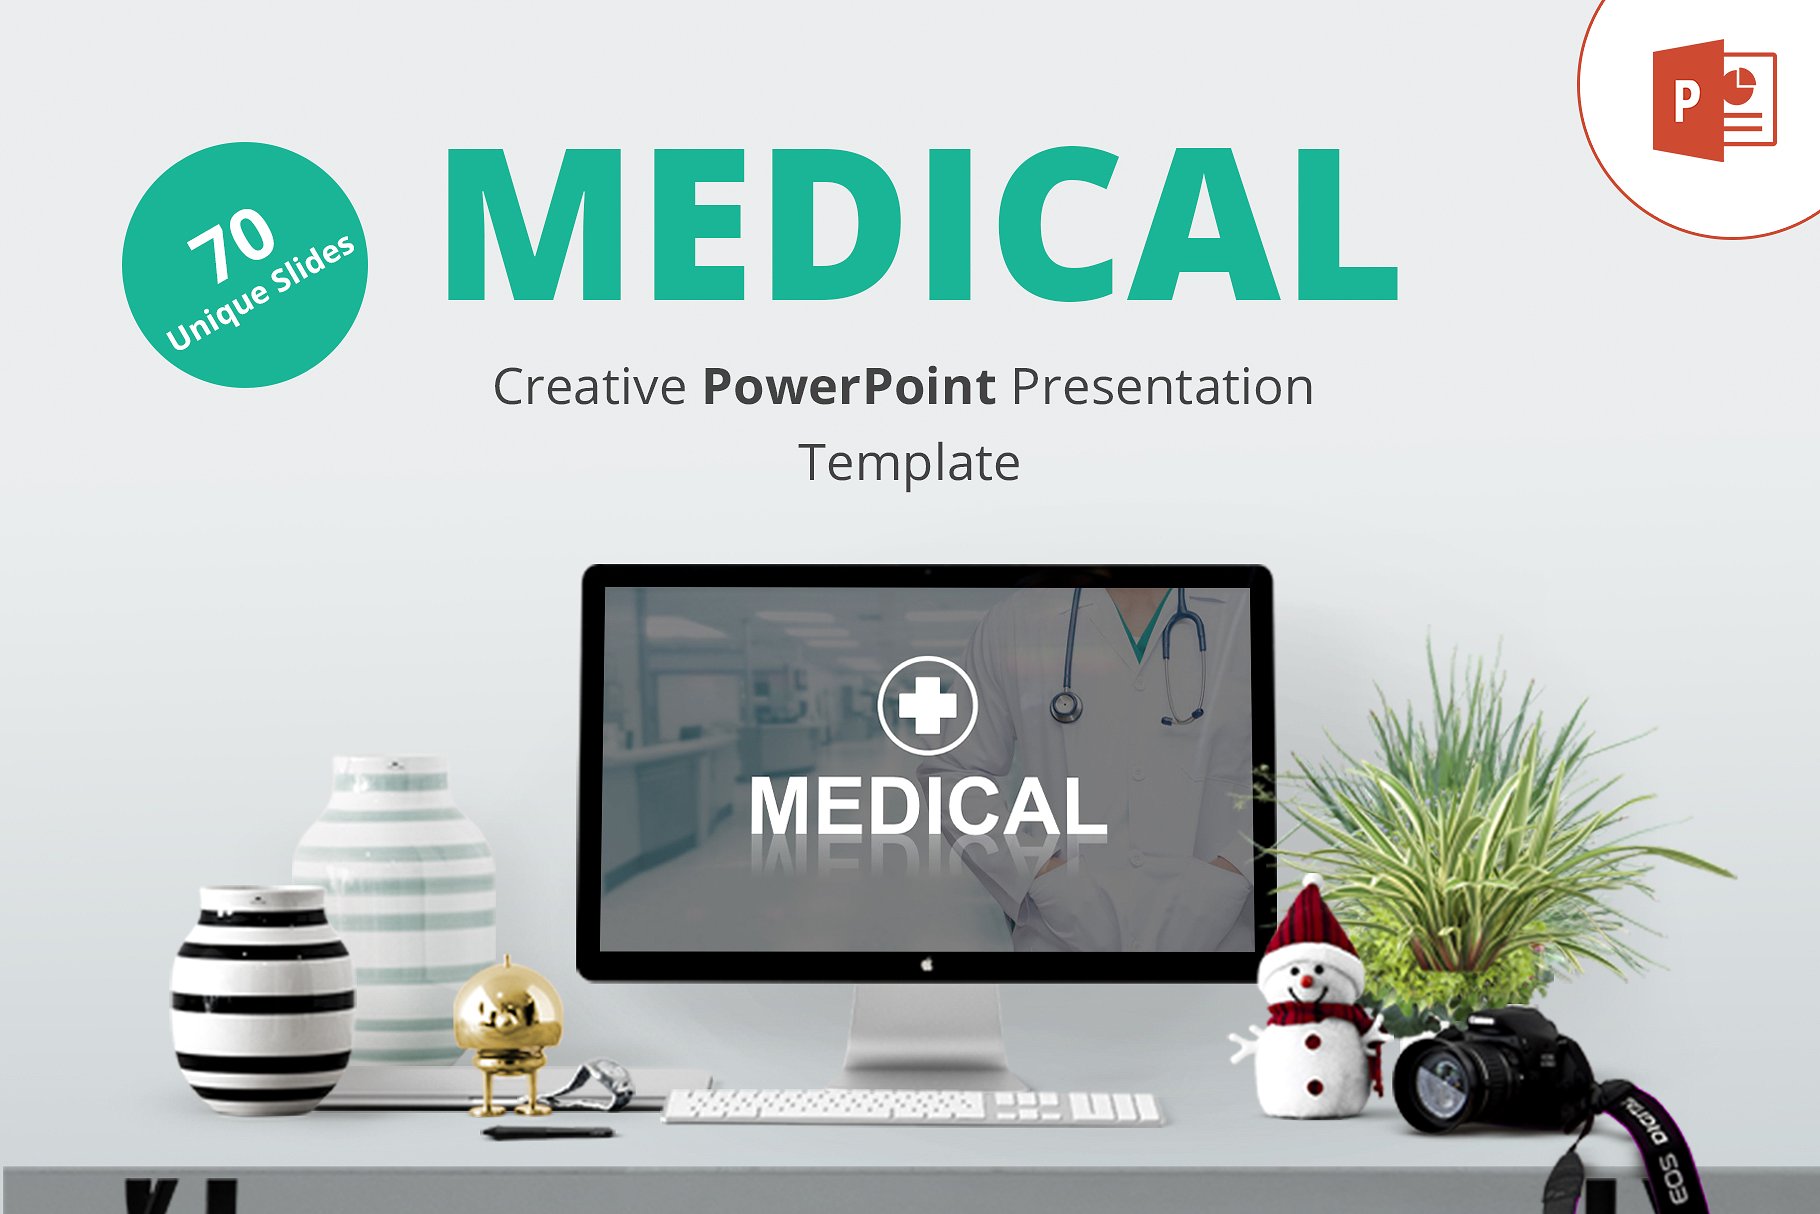 高品质医疗行业演示的PPT模板下载 Medical PowerPoint Template [pptx]插图